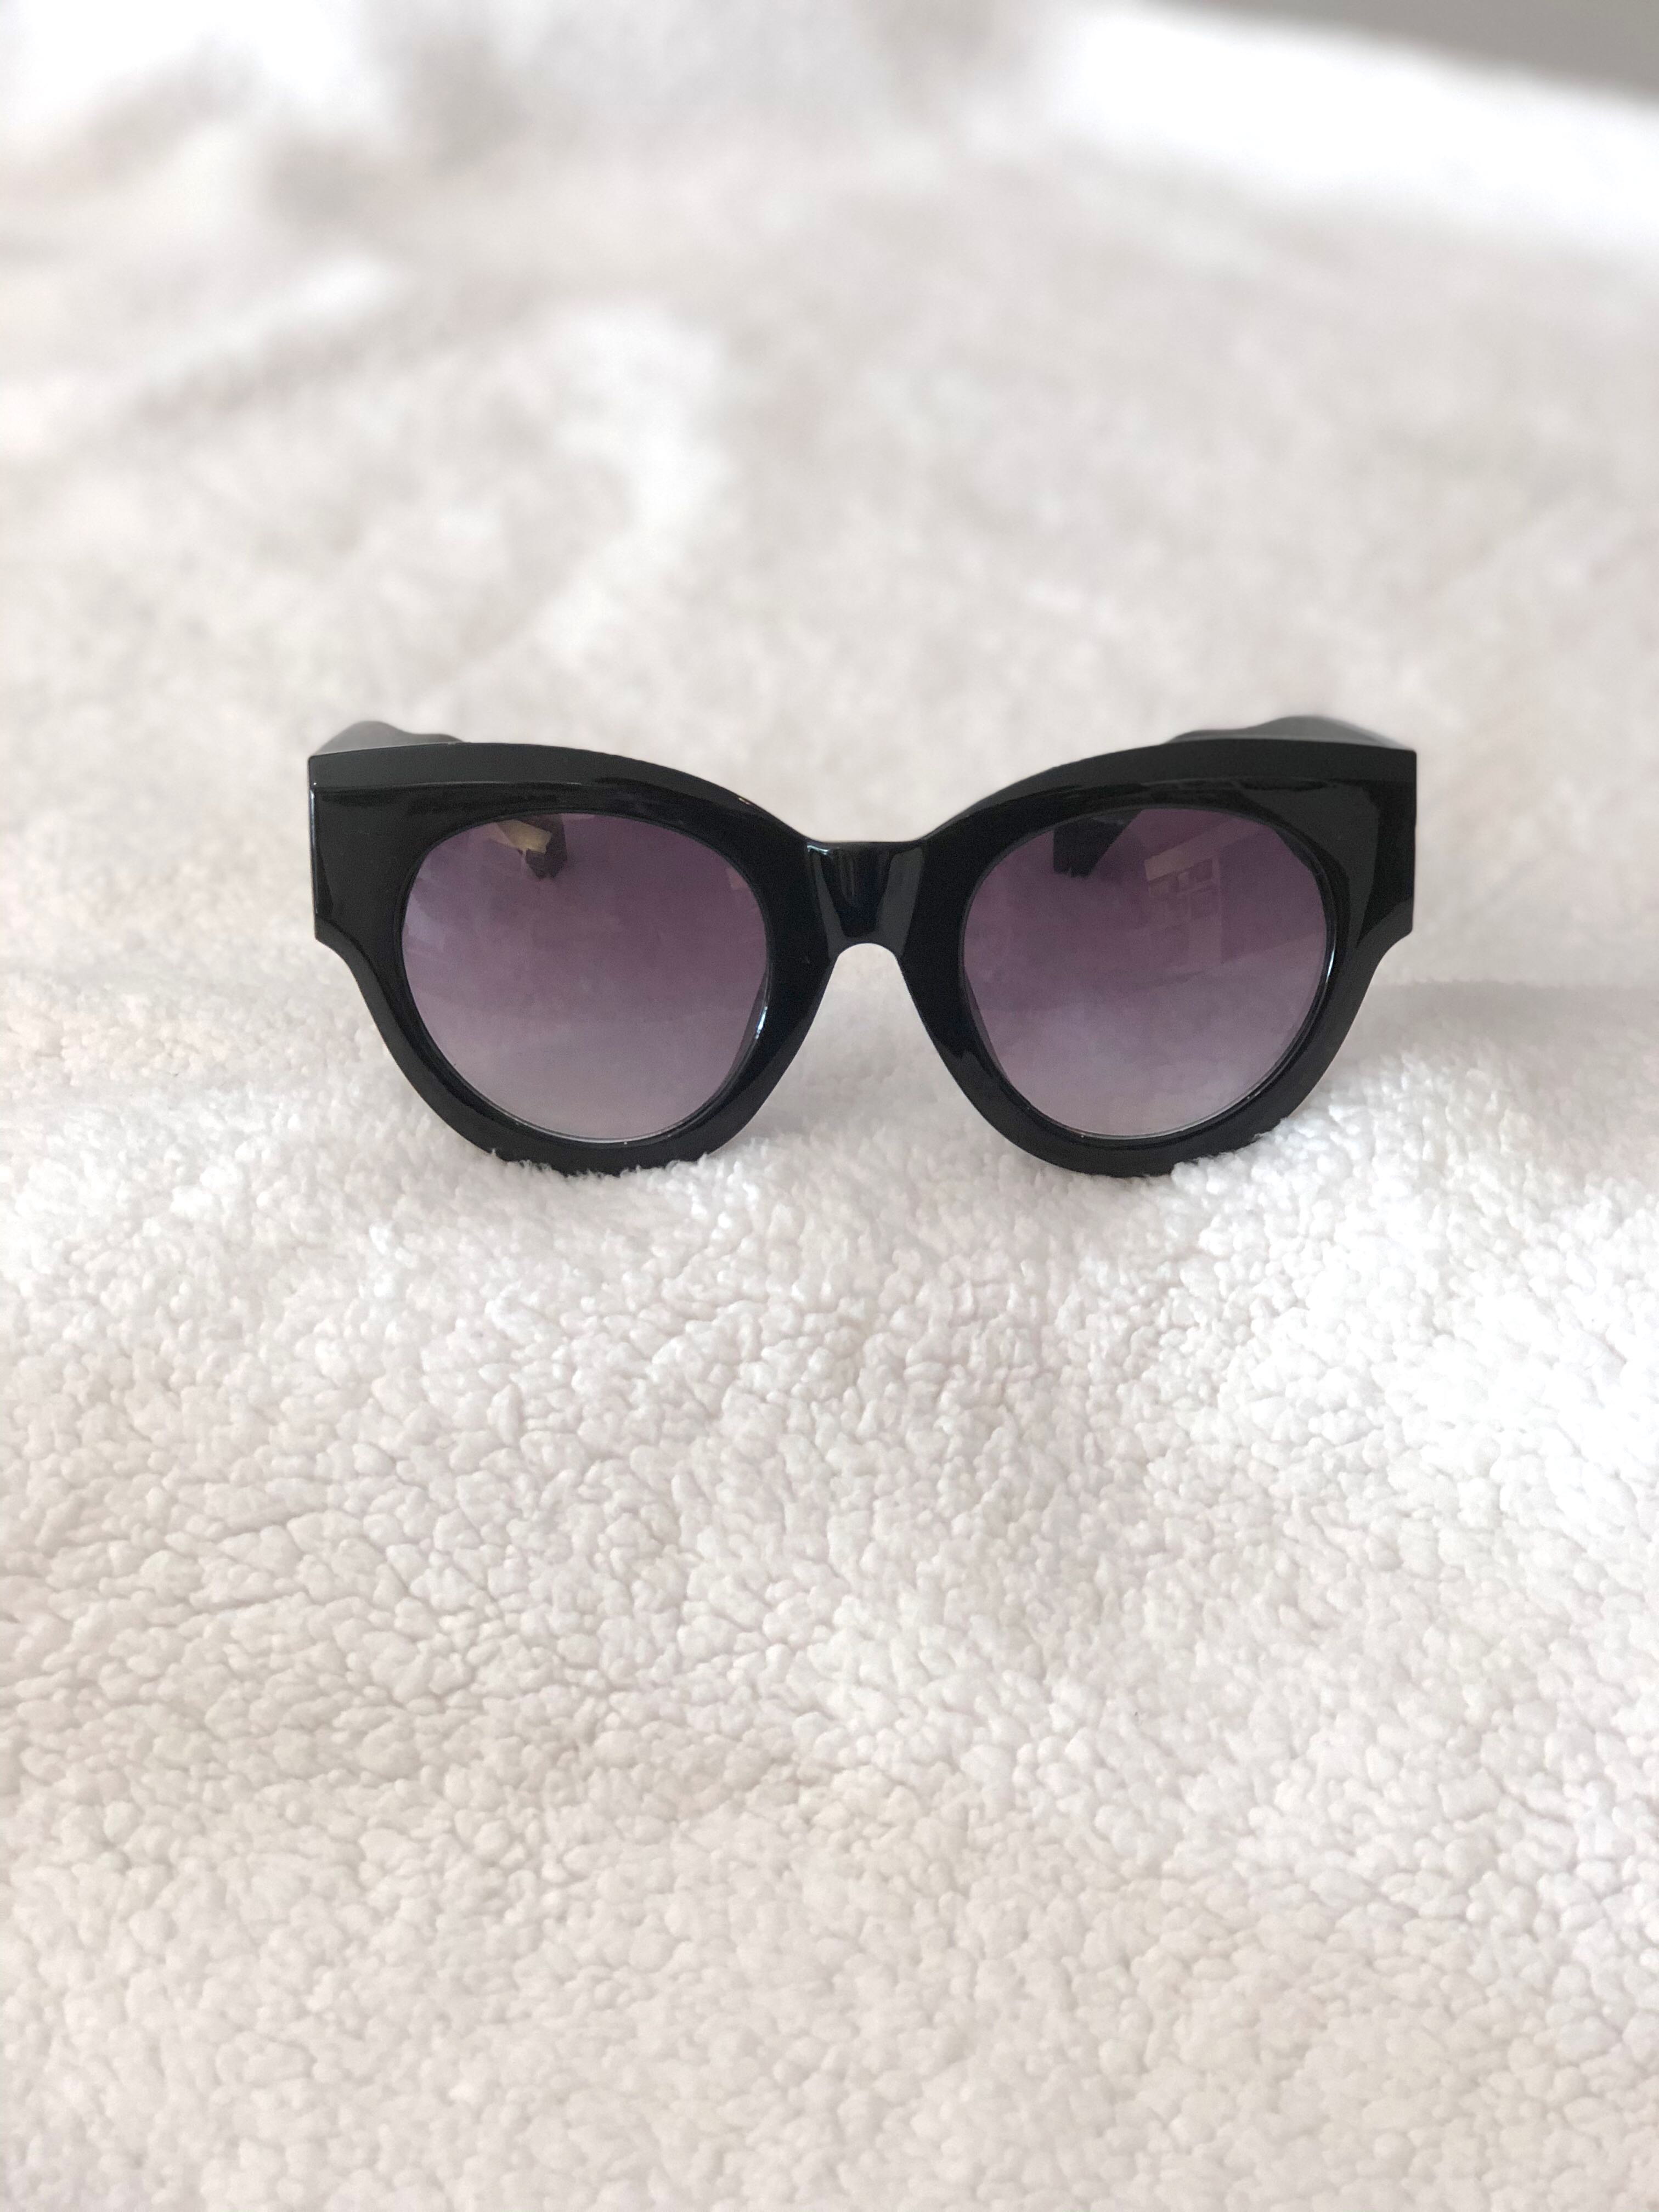 aldos sunglasses